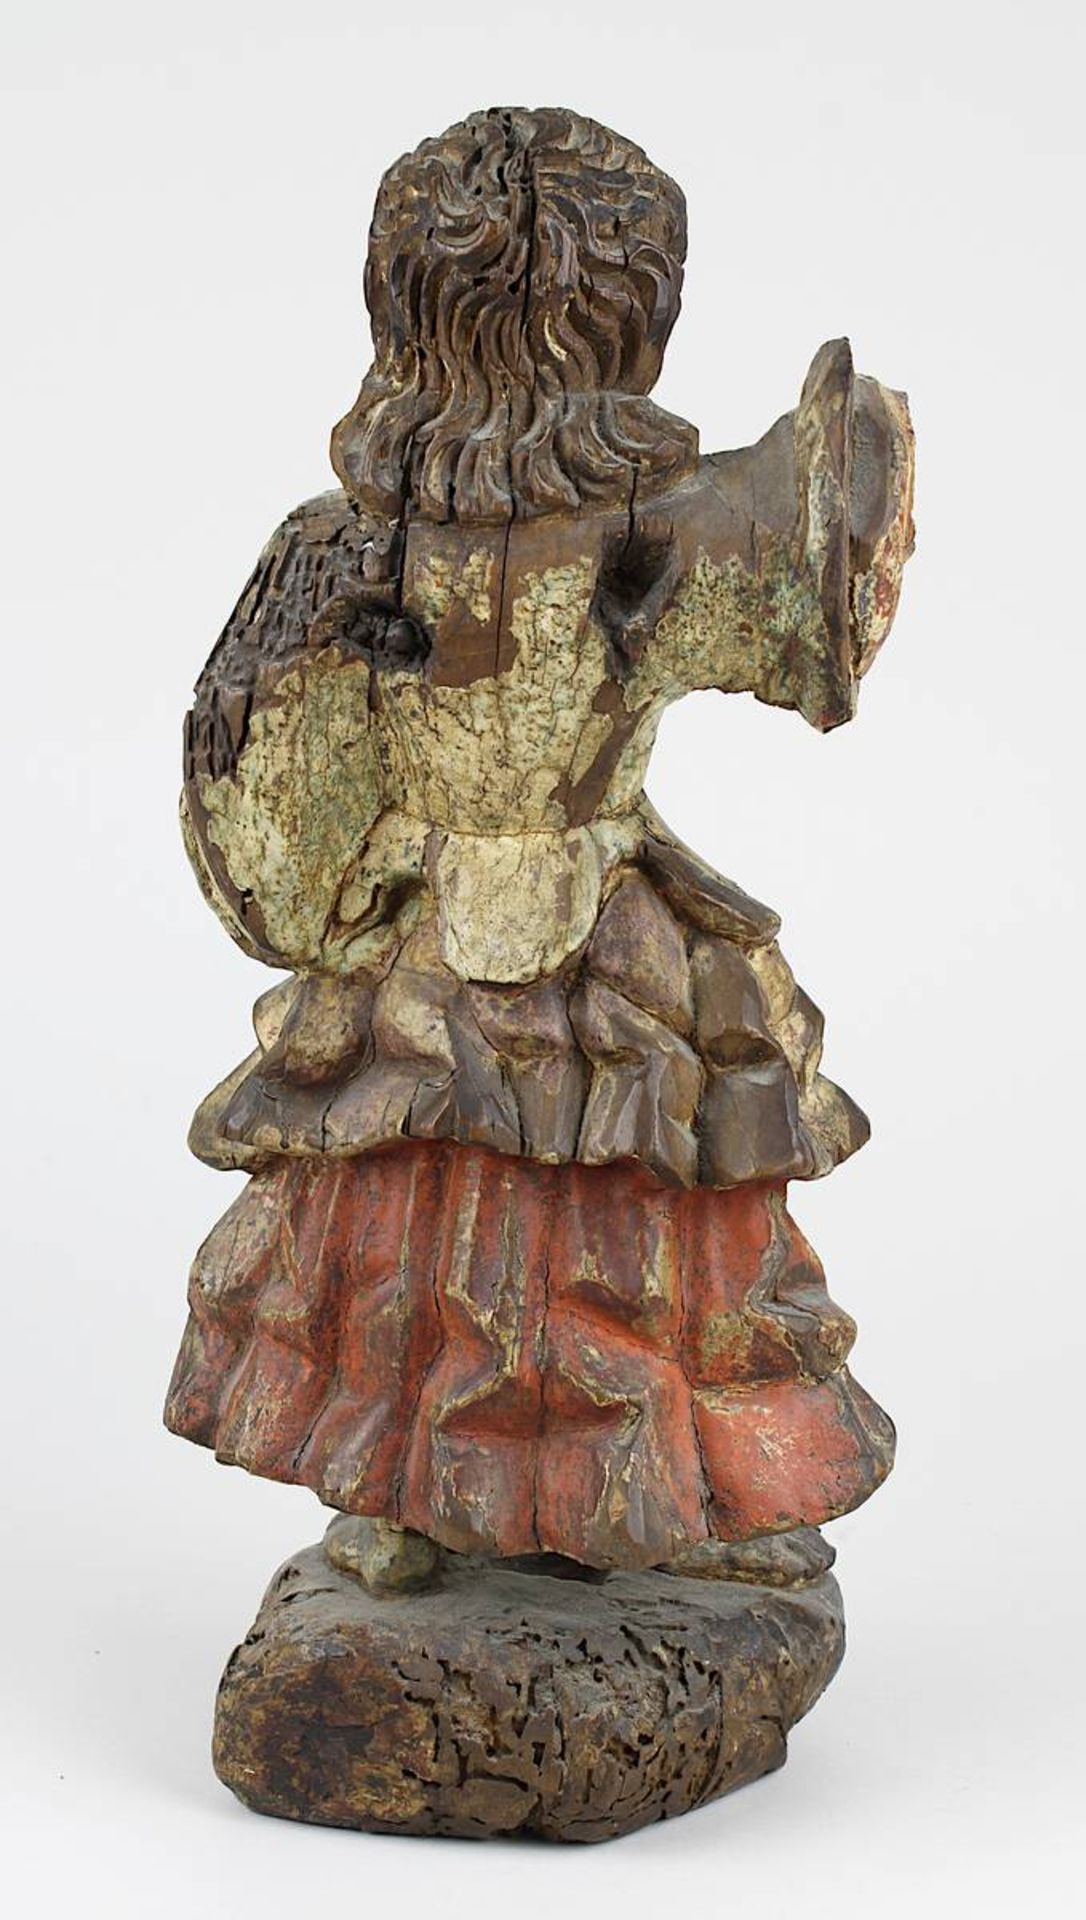 Engelsfigur aus Holz, kolonialspanisch 18. Jh., Holz geschnitzt und mit Resten der farbigen Fassung, - Bild 3 aus 4